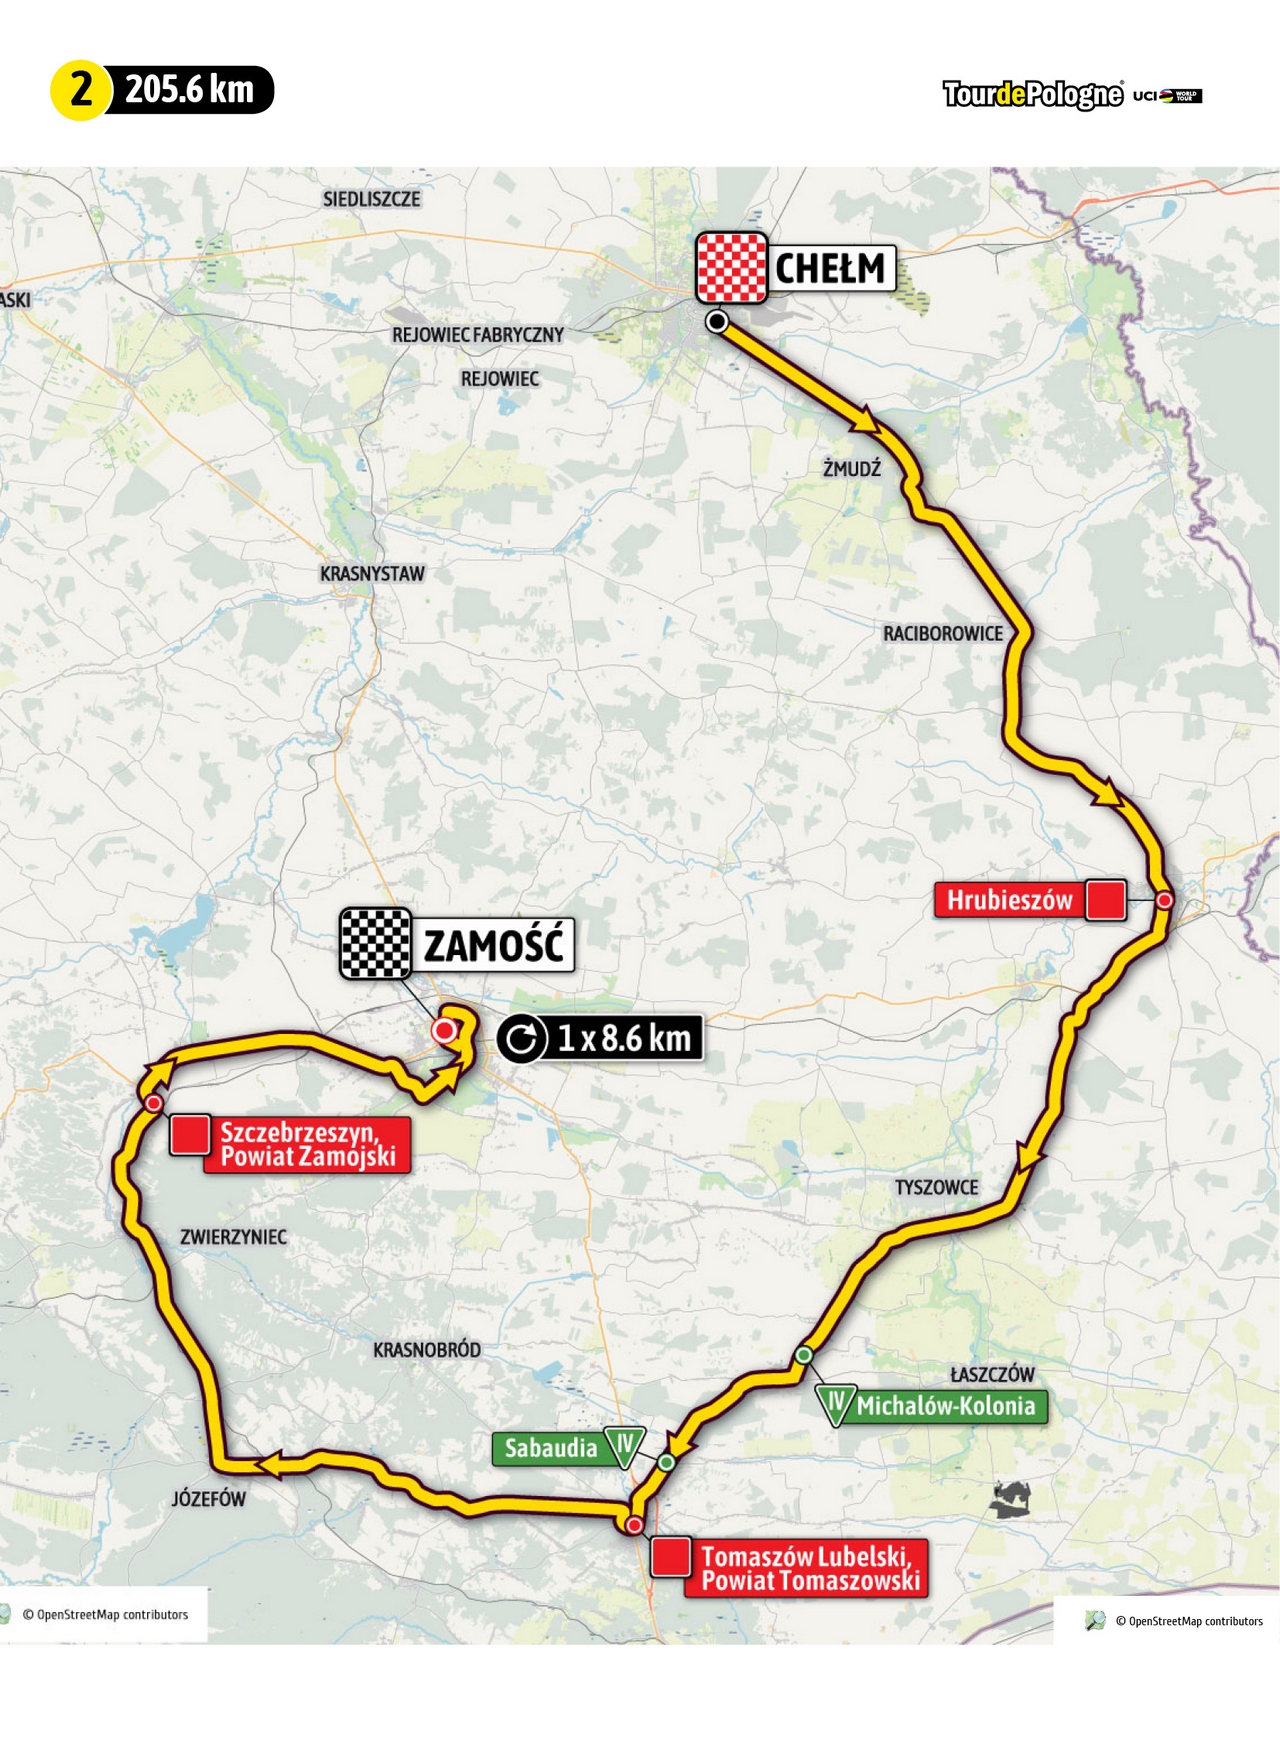 Etap 2 Tour de Pologne (źródło: tourdepologne.pl)